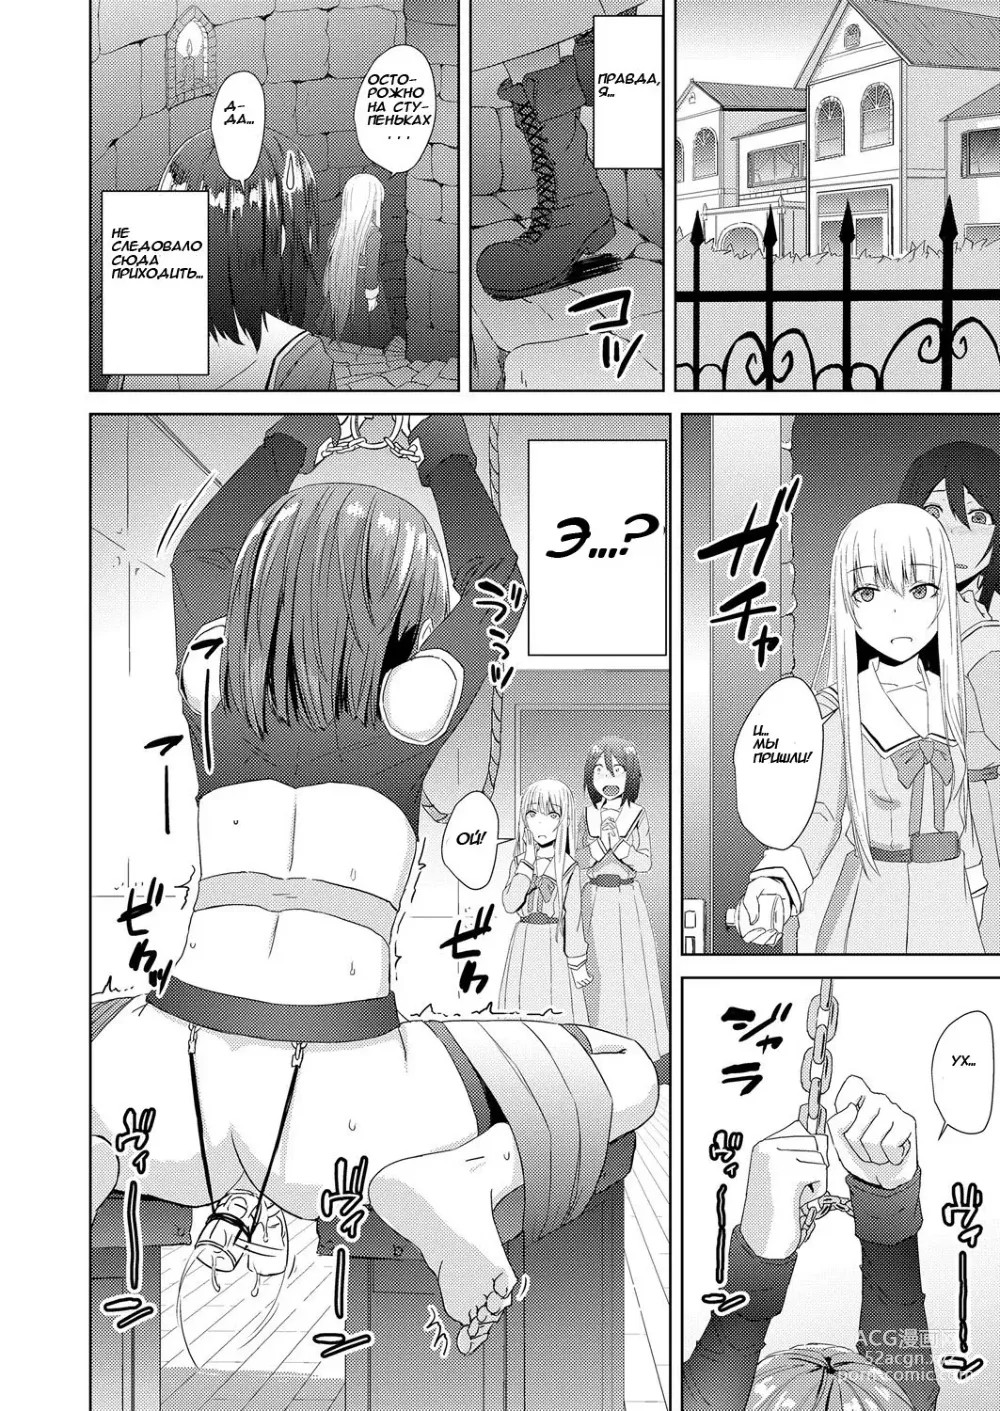 Page 4 of manga Watashitachi no Kizashi